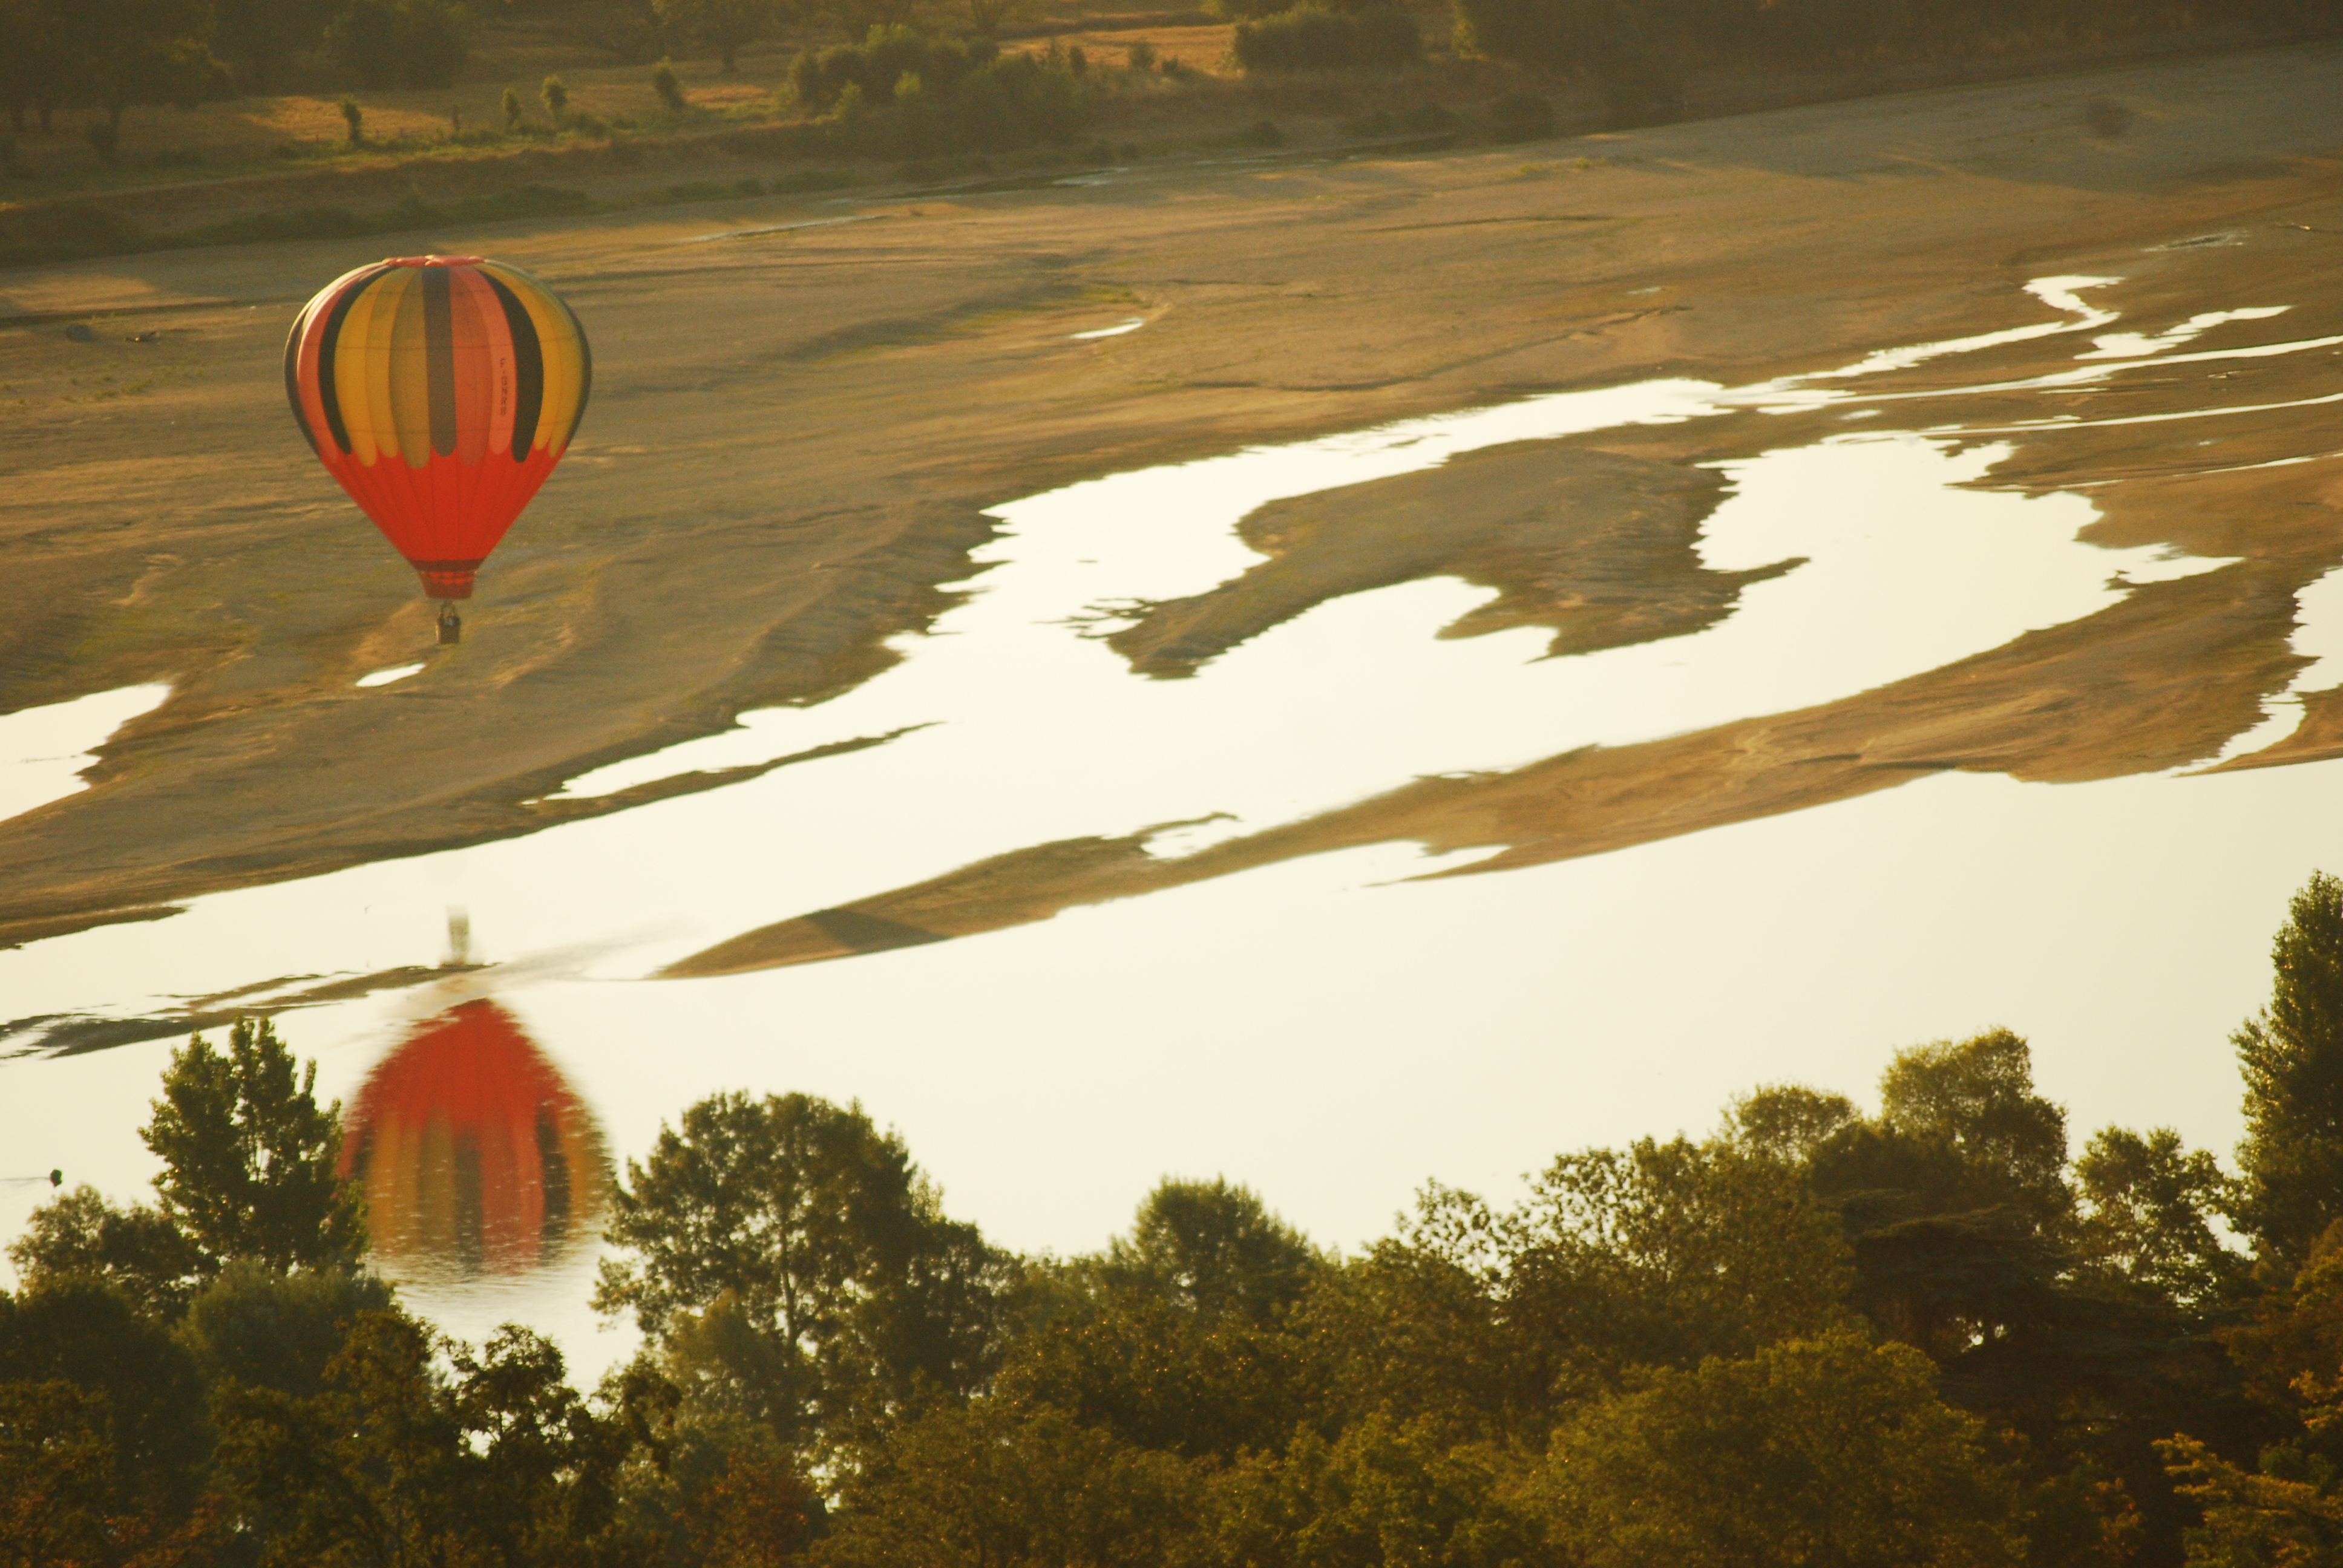 Loire Valley, France, Hot air Balloon ride